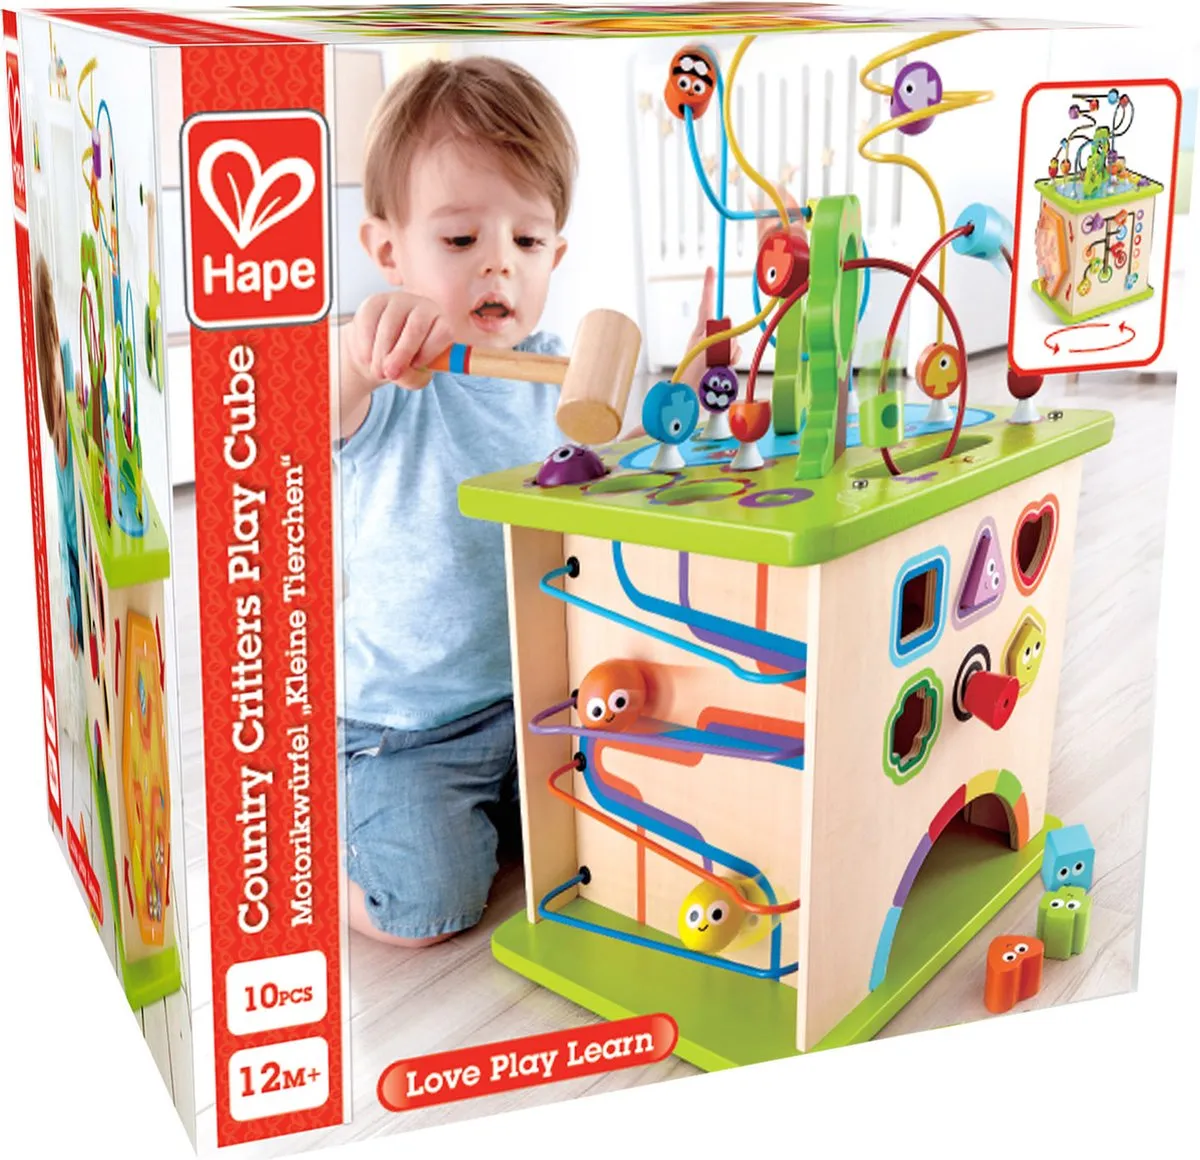 Hape Speelkubus - Educatief spel speelgoed